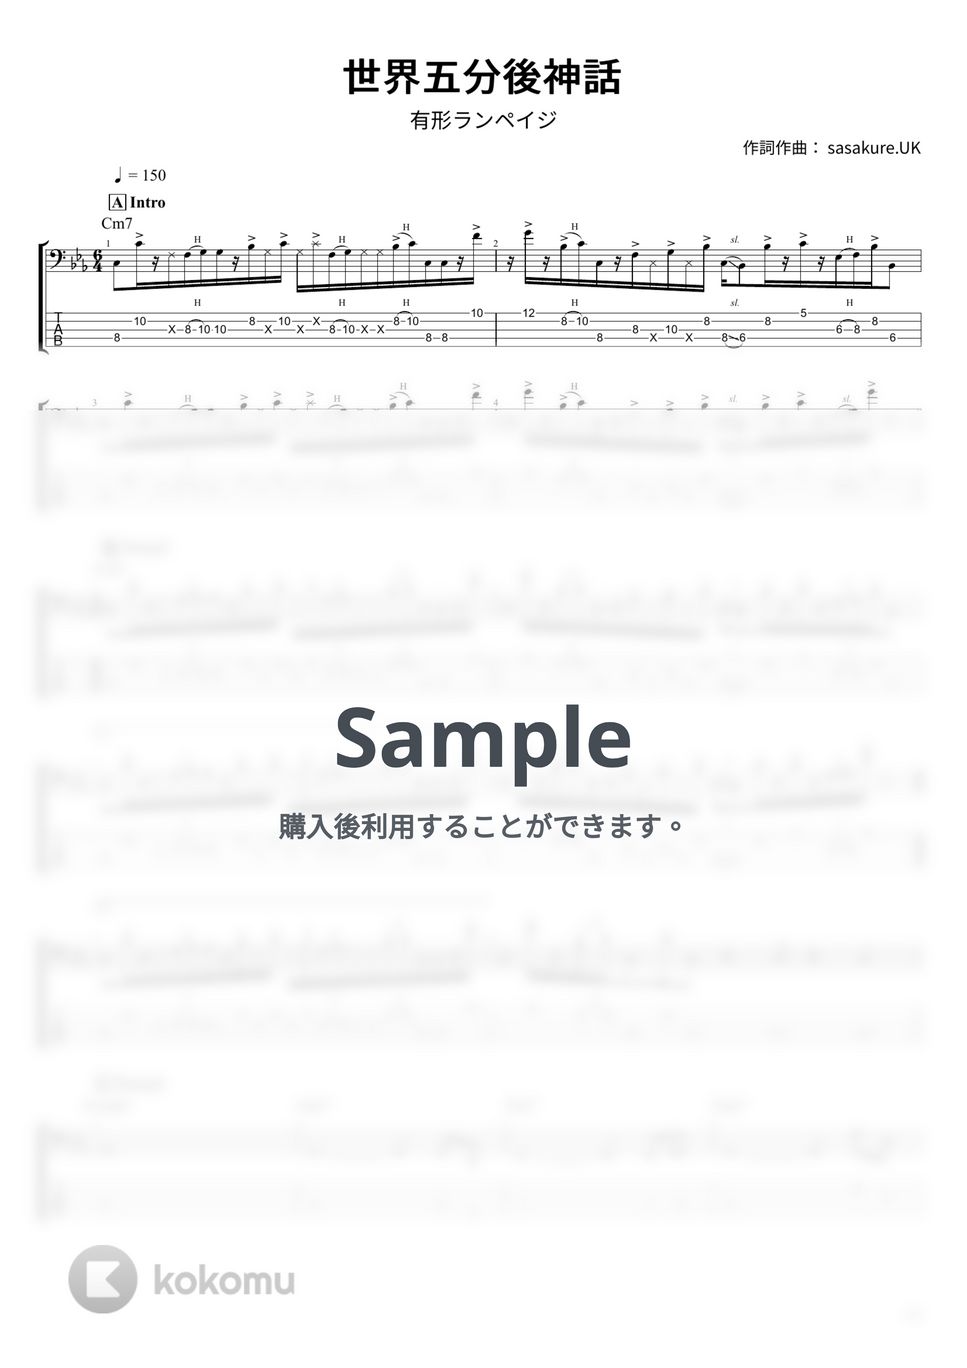 有形ランペイジ - 世界五分後神話 (ベース Tab譜 5弦) by T's bass score